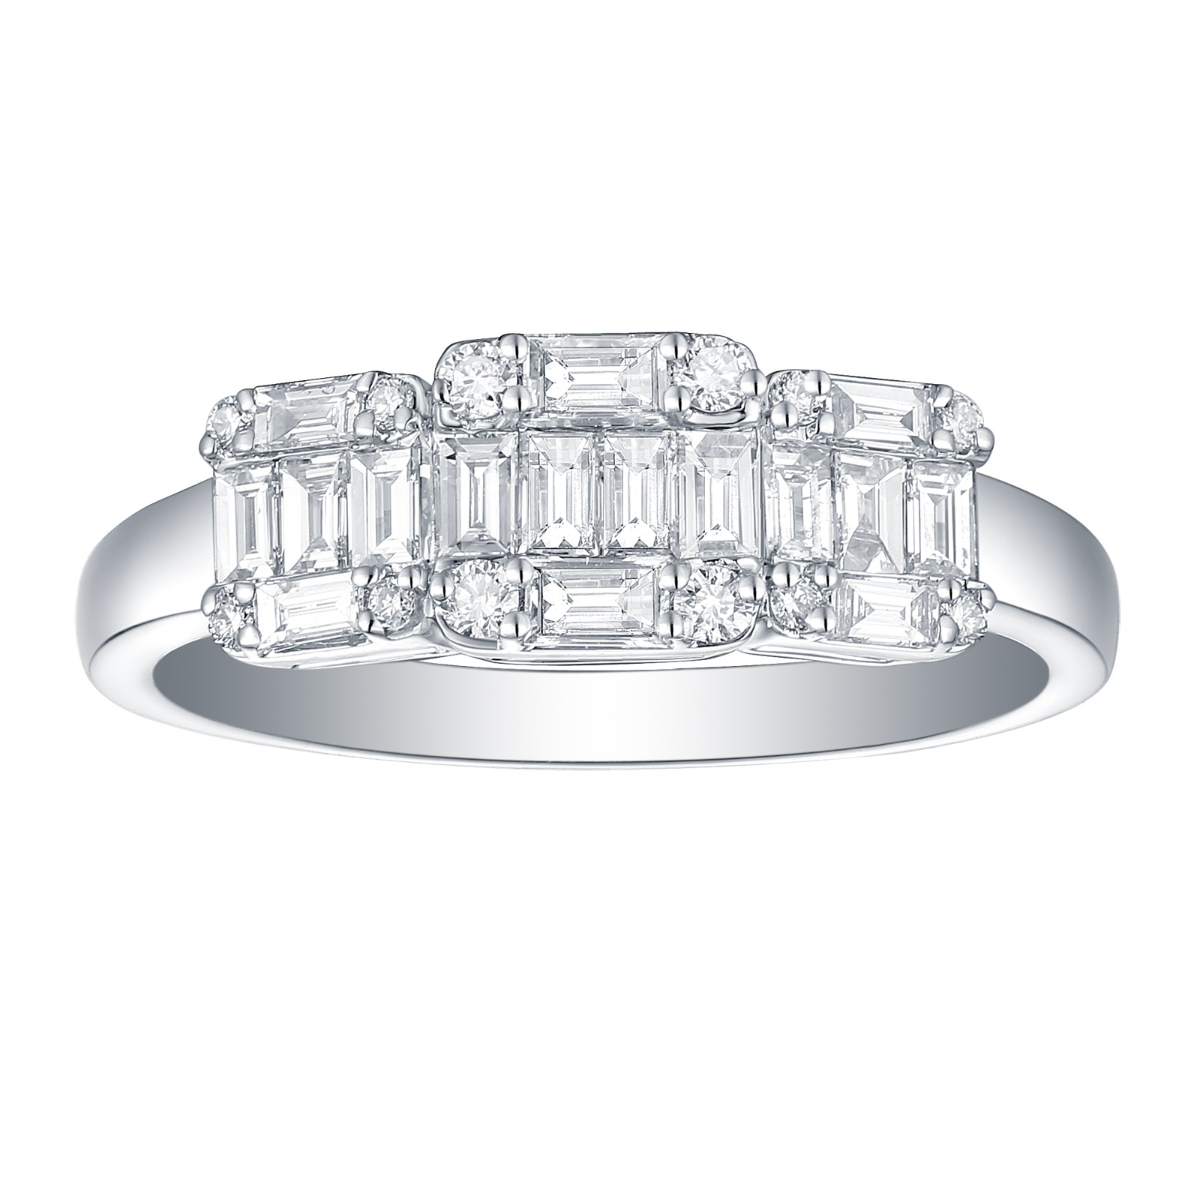 R34824WHT – 18K White Gold Diamond Ring, 0.63 TCW